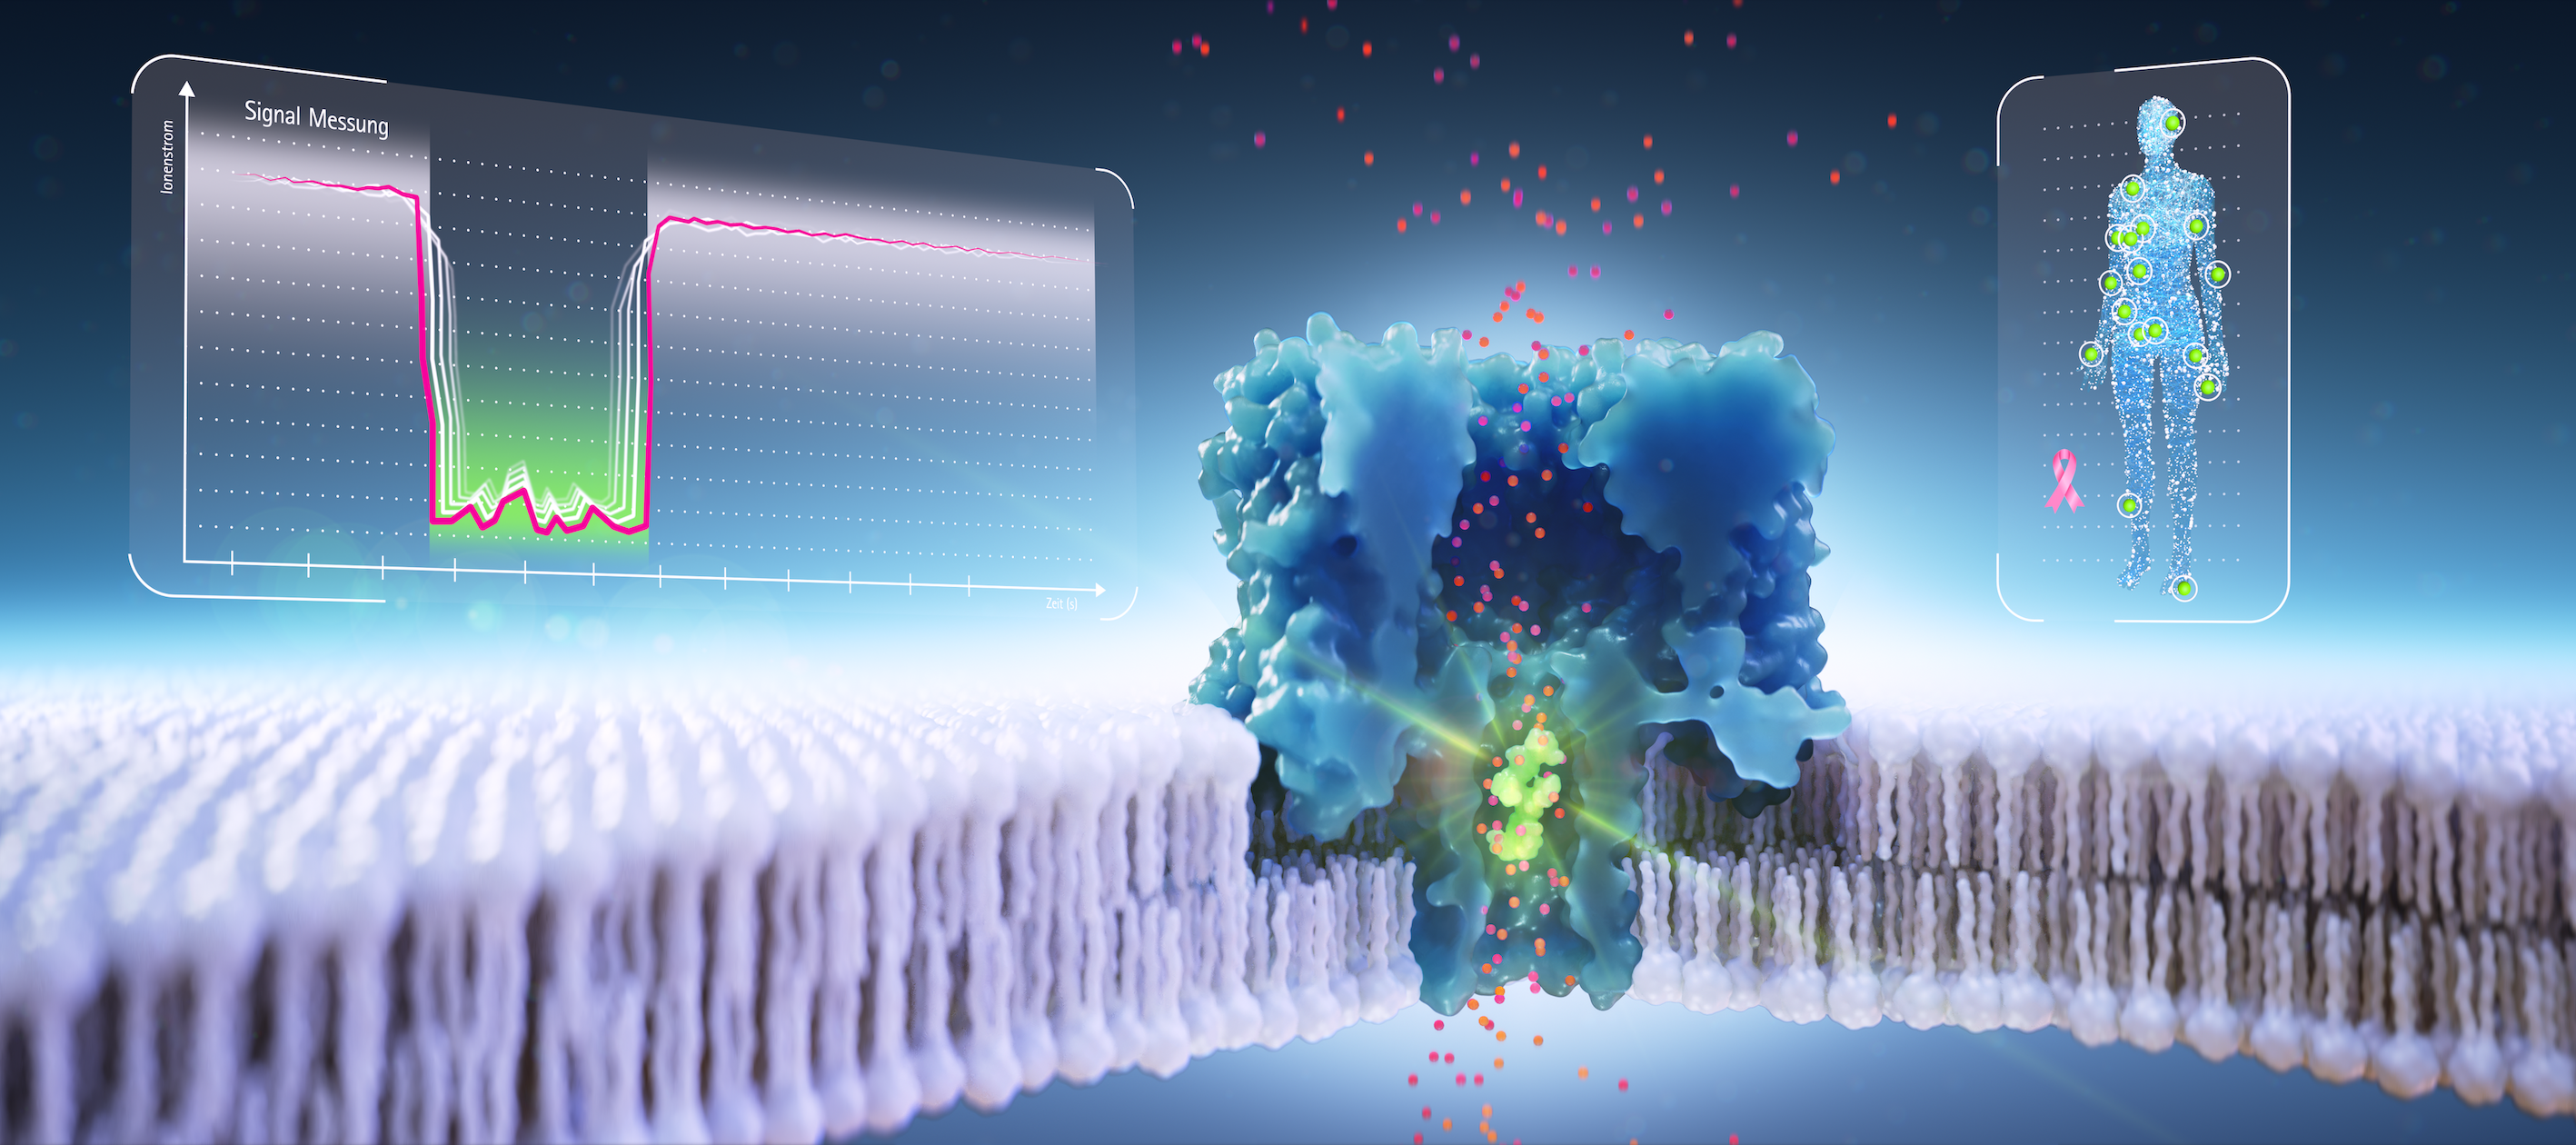 Farbige 3D-Darstellung der Technologieplattform mit Koordinatensystem der Signalmessung, einer biologischen Pore, durch die Moleküle diffundieren und einer erkrankten Person.